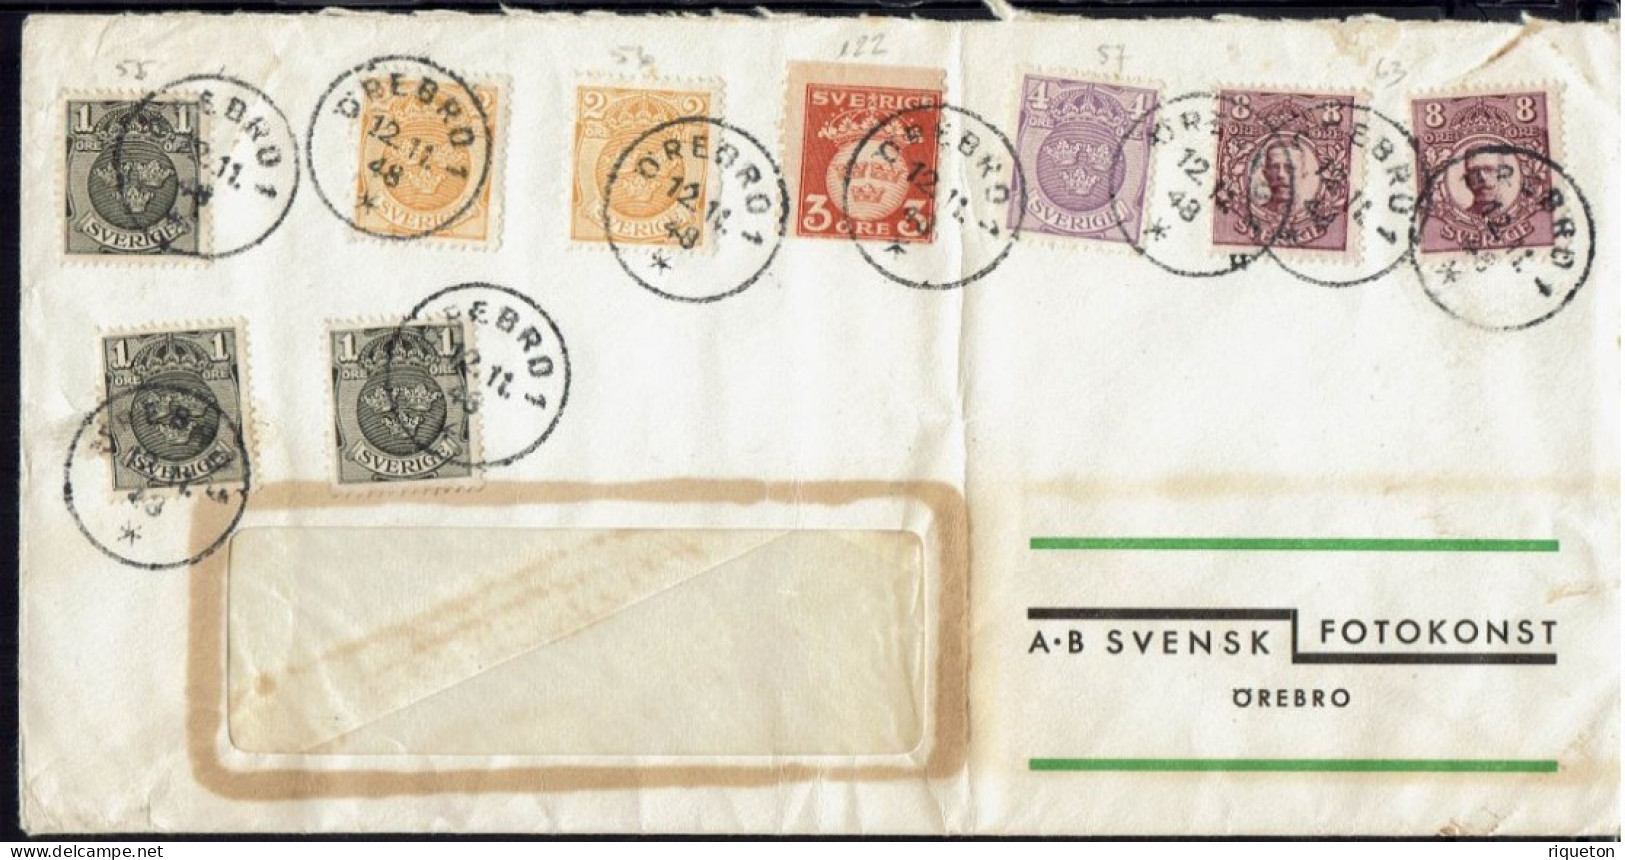 Affranchissement Multiple Sur Enveloppe à Fenêtre  A.B  Svensk  Fotokonst  Orebro. Cachets Orebro 1 Du 12-11-1948. - Briefe U. Dokumente